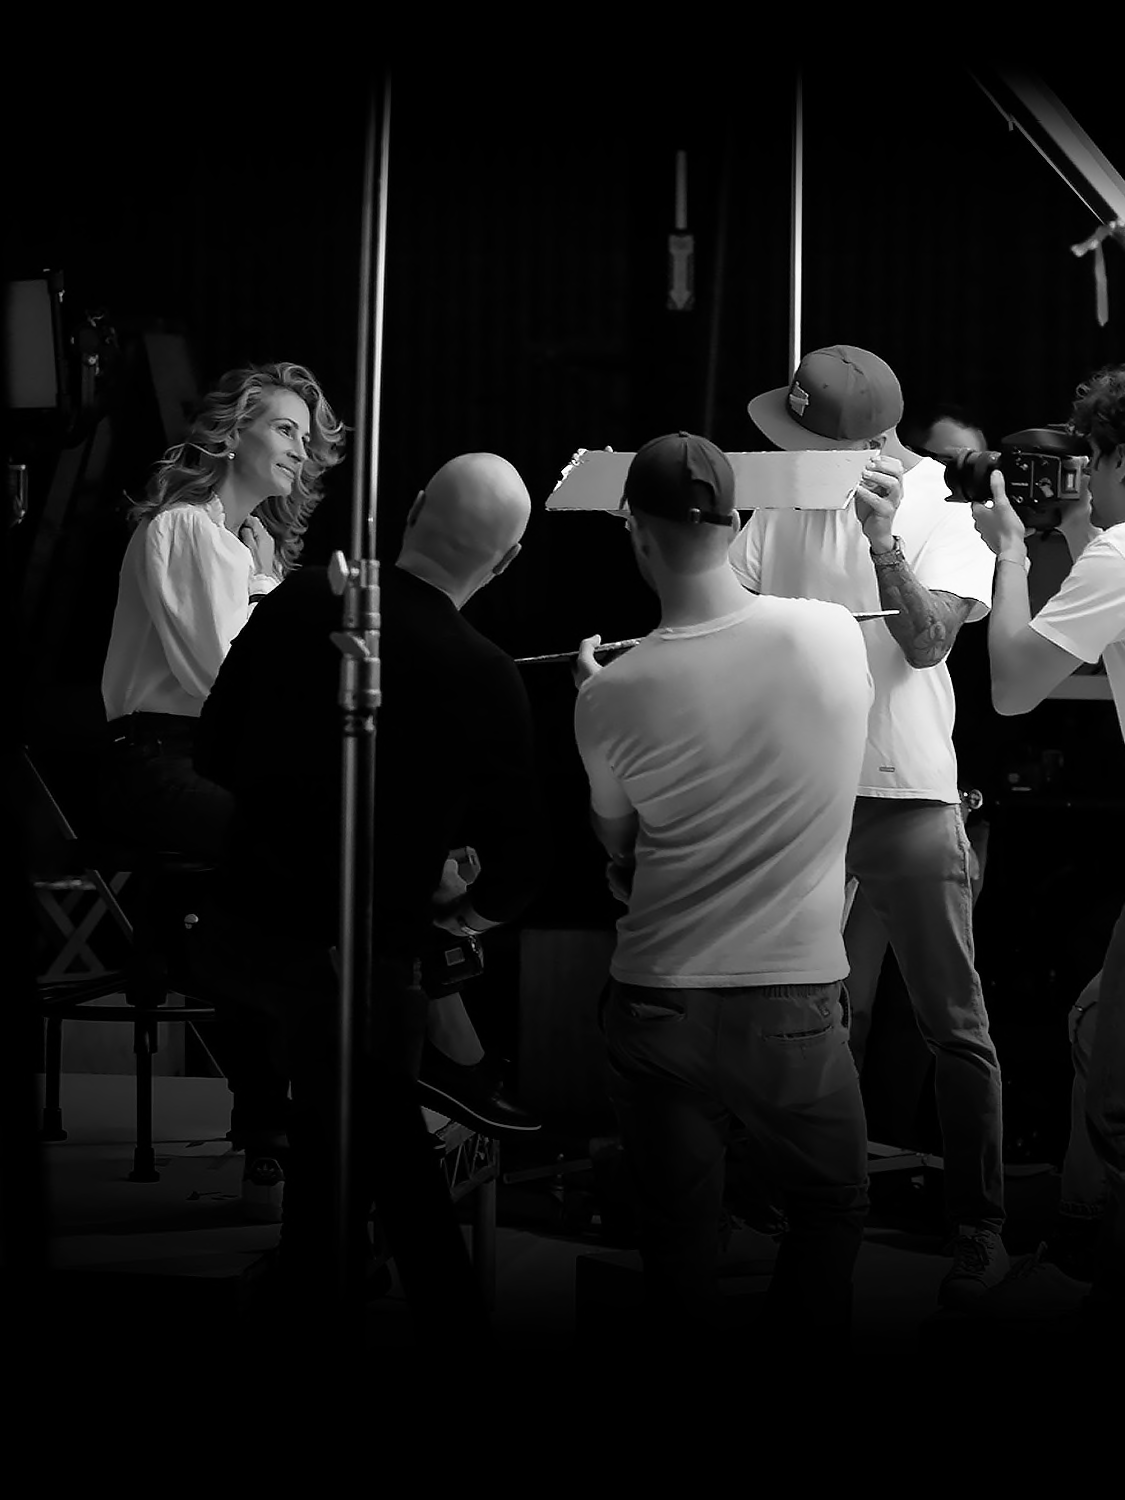 朱莉娅·罗伯茨（Julia Roberts）被四位摄影师包围的幕后照片